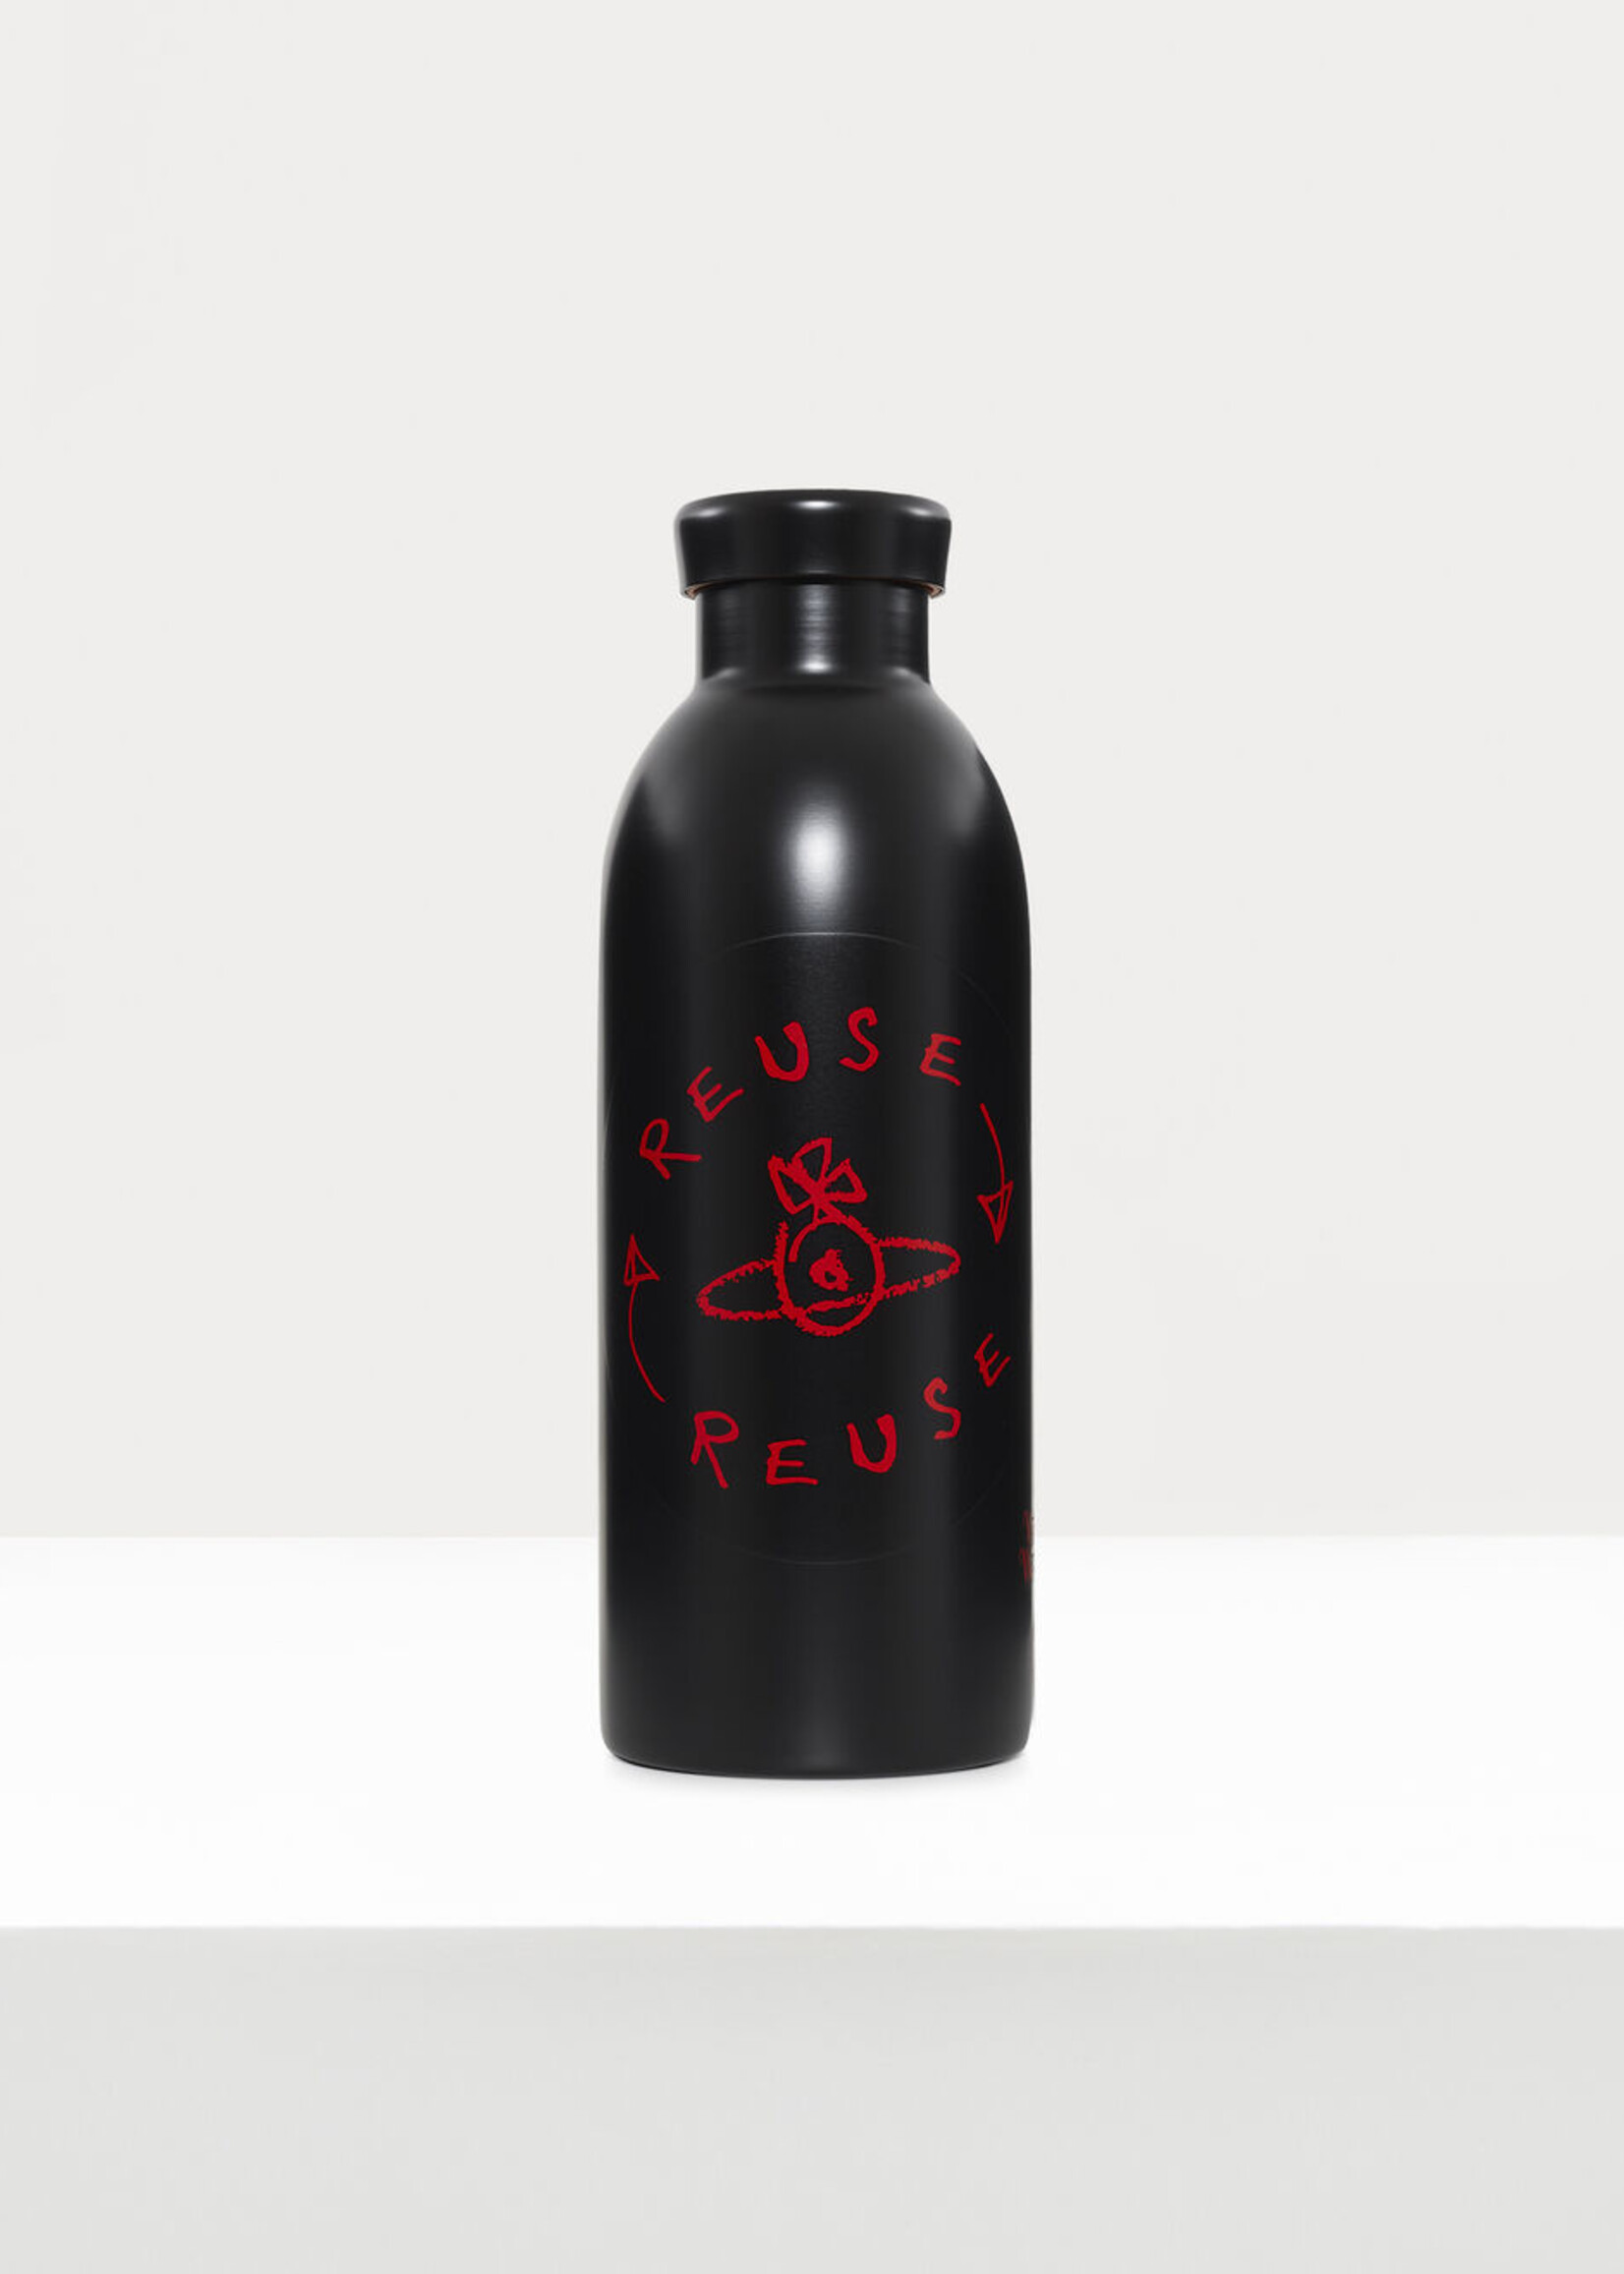 https://cdn.shoplightspeed.com/shops/615307/files/58984907/1652x2313x1/vivienne-westwood-reusable-water-bottle-in-black.jpg